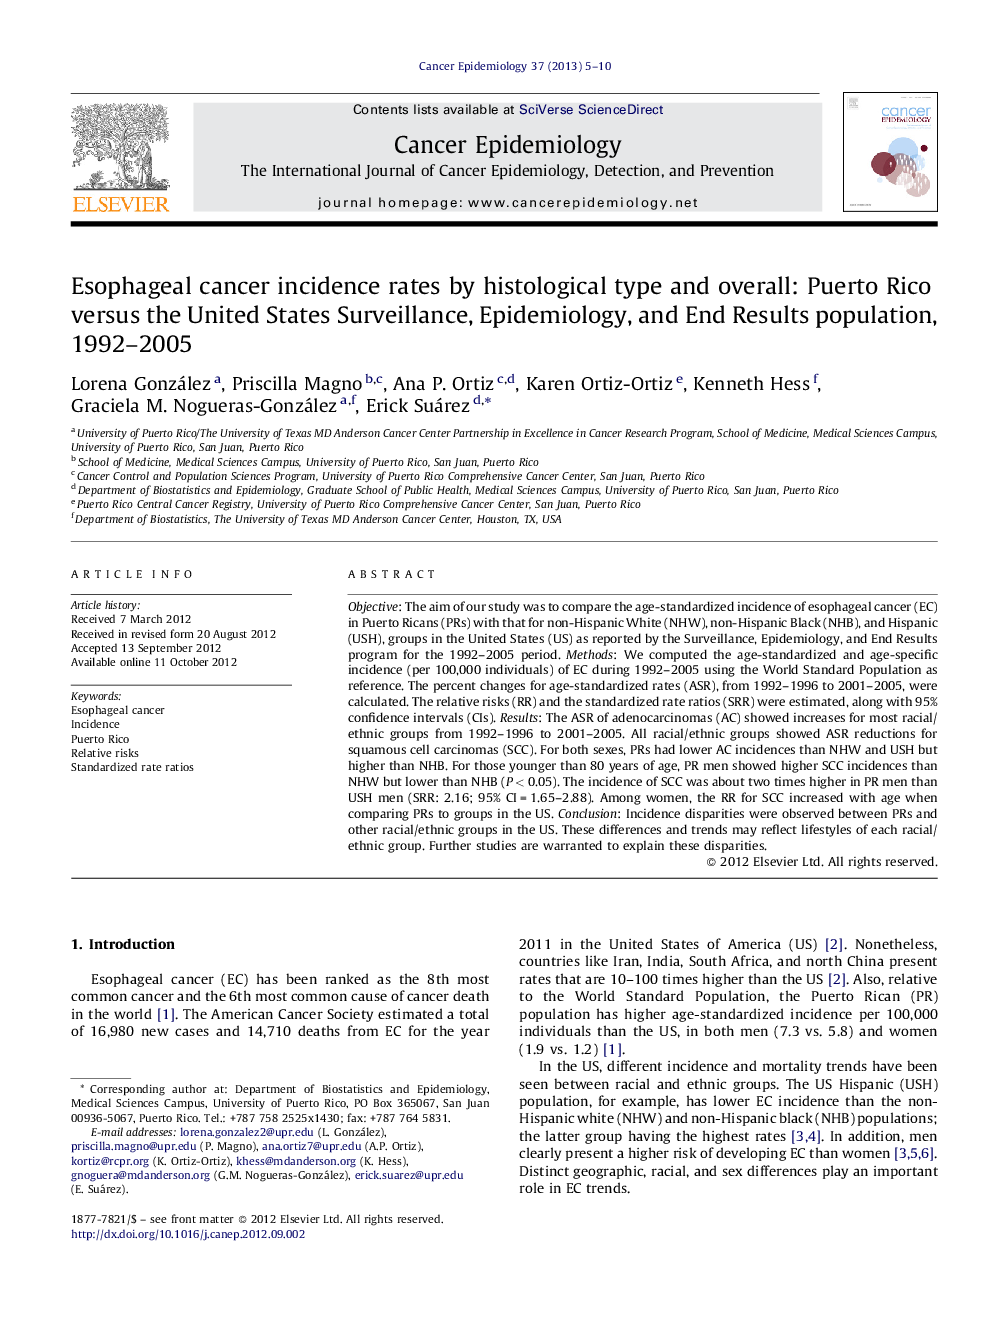 میزان بروز سرطان مری با نوع بافتشناسی و کلی: پورتوریکو در مقایسه با ایالات متحده نظارت، اپیدمیولوژی و نتایج پایانی جمعیت، سالهای 1992-2005 